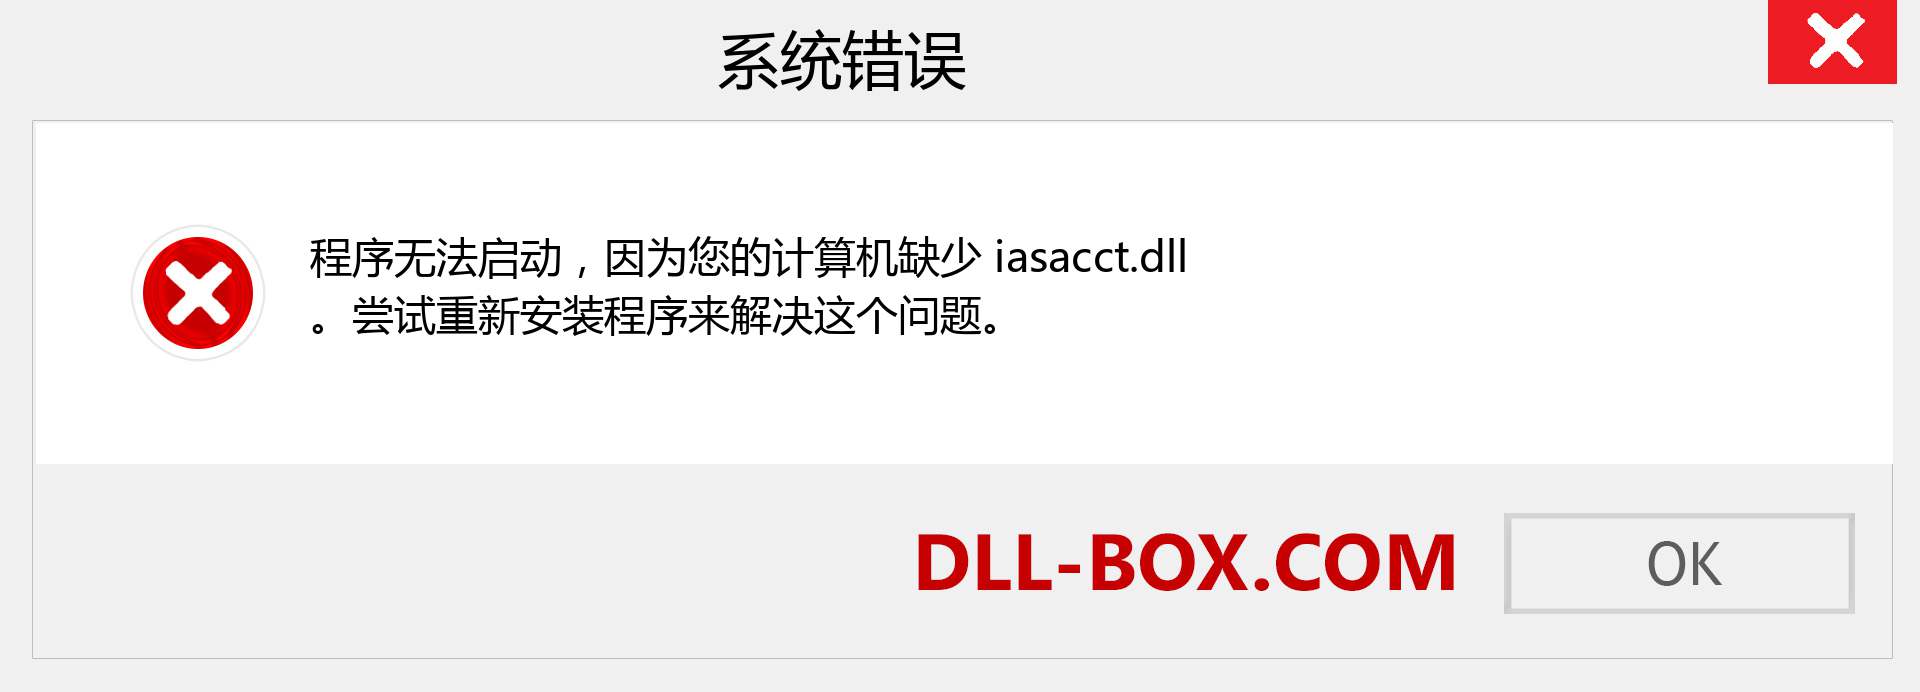 iasacct.dll 文件丢失？。 适用于 Windows 7、8、10 的下载 - 修复 Windows、照片、图像上的 iasacct dll 丢失错误